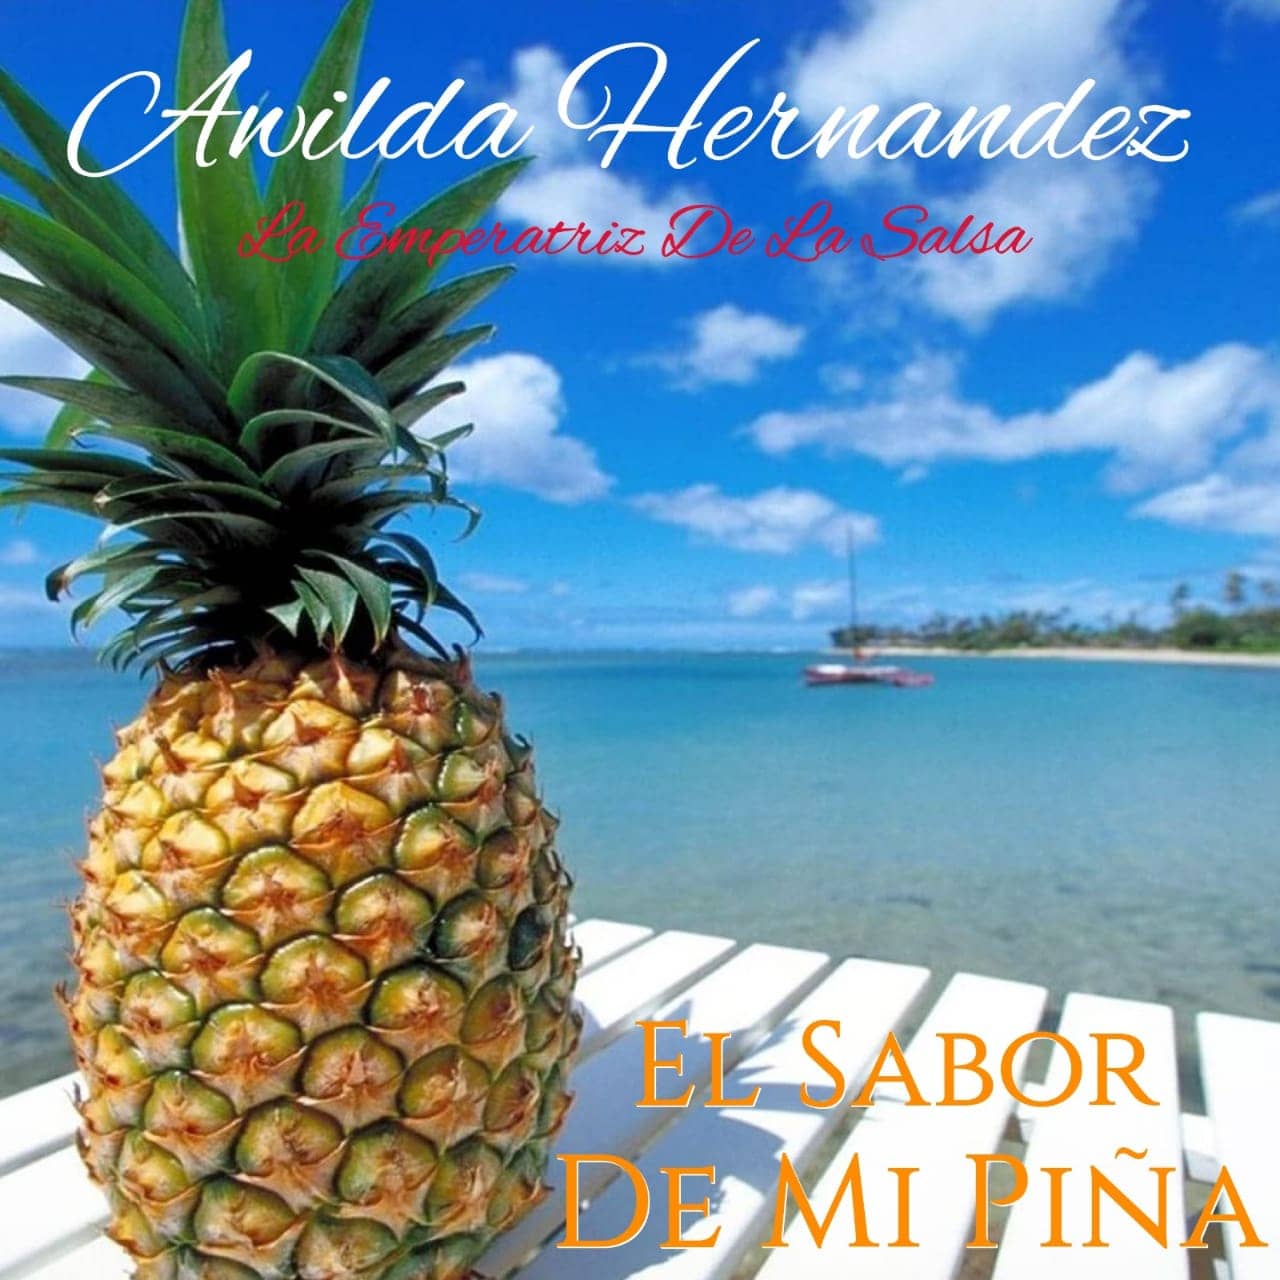 El Sabor De Mi Piña - Awilda Hernandez